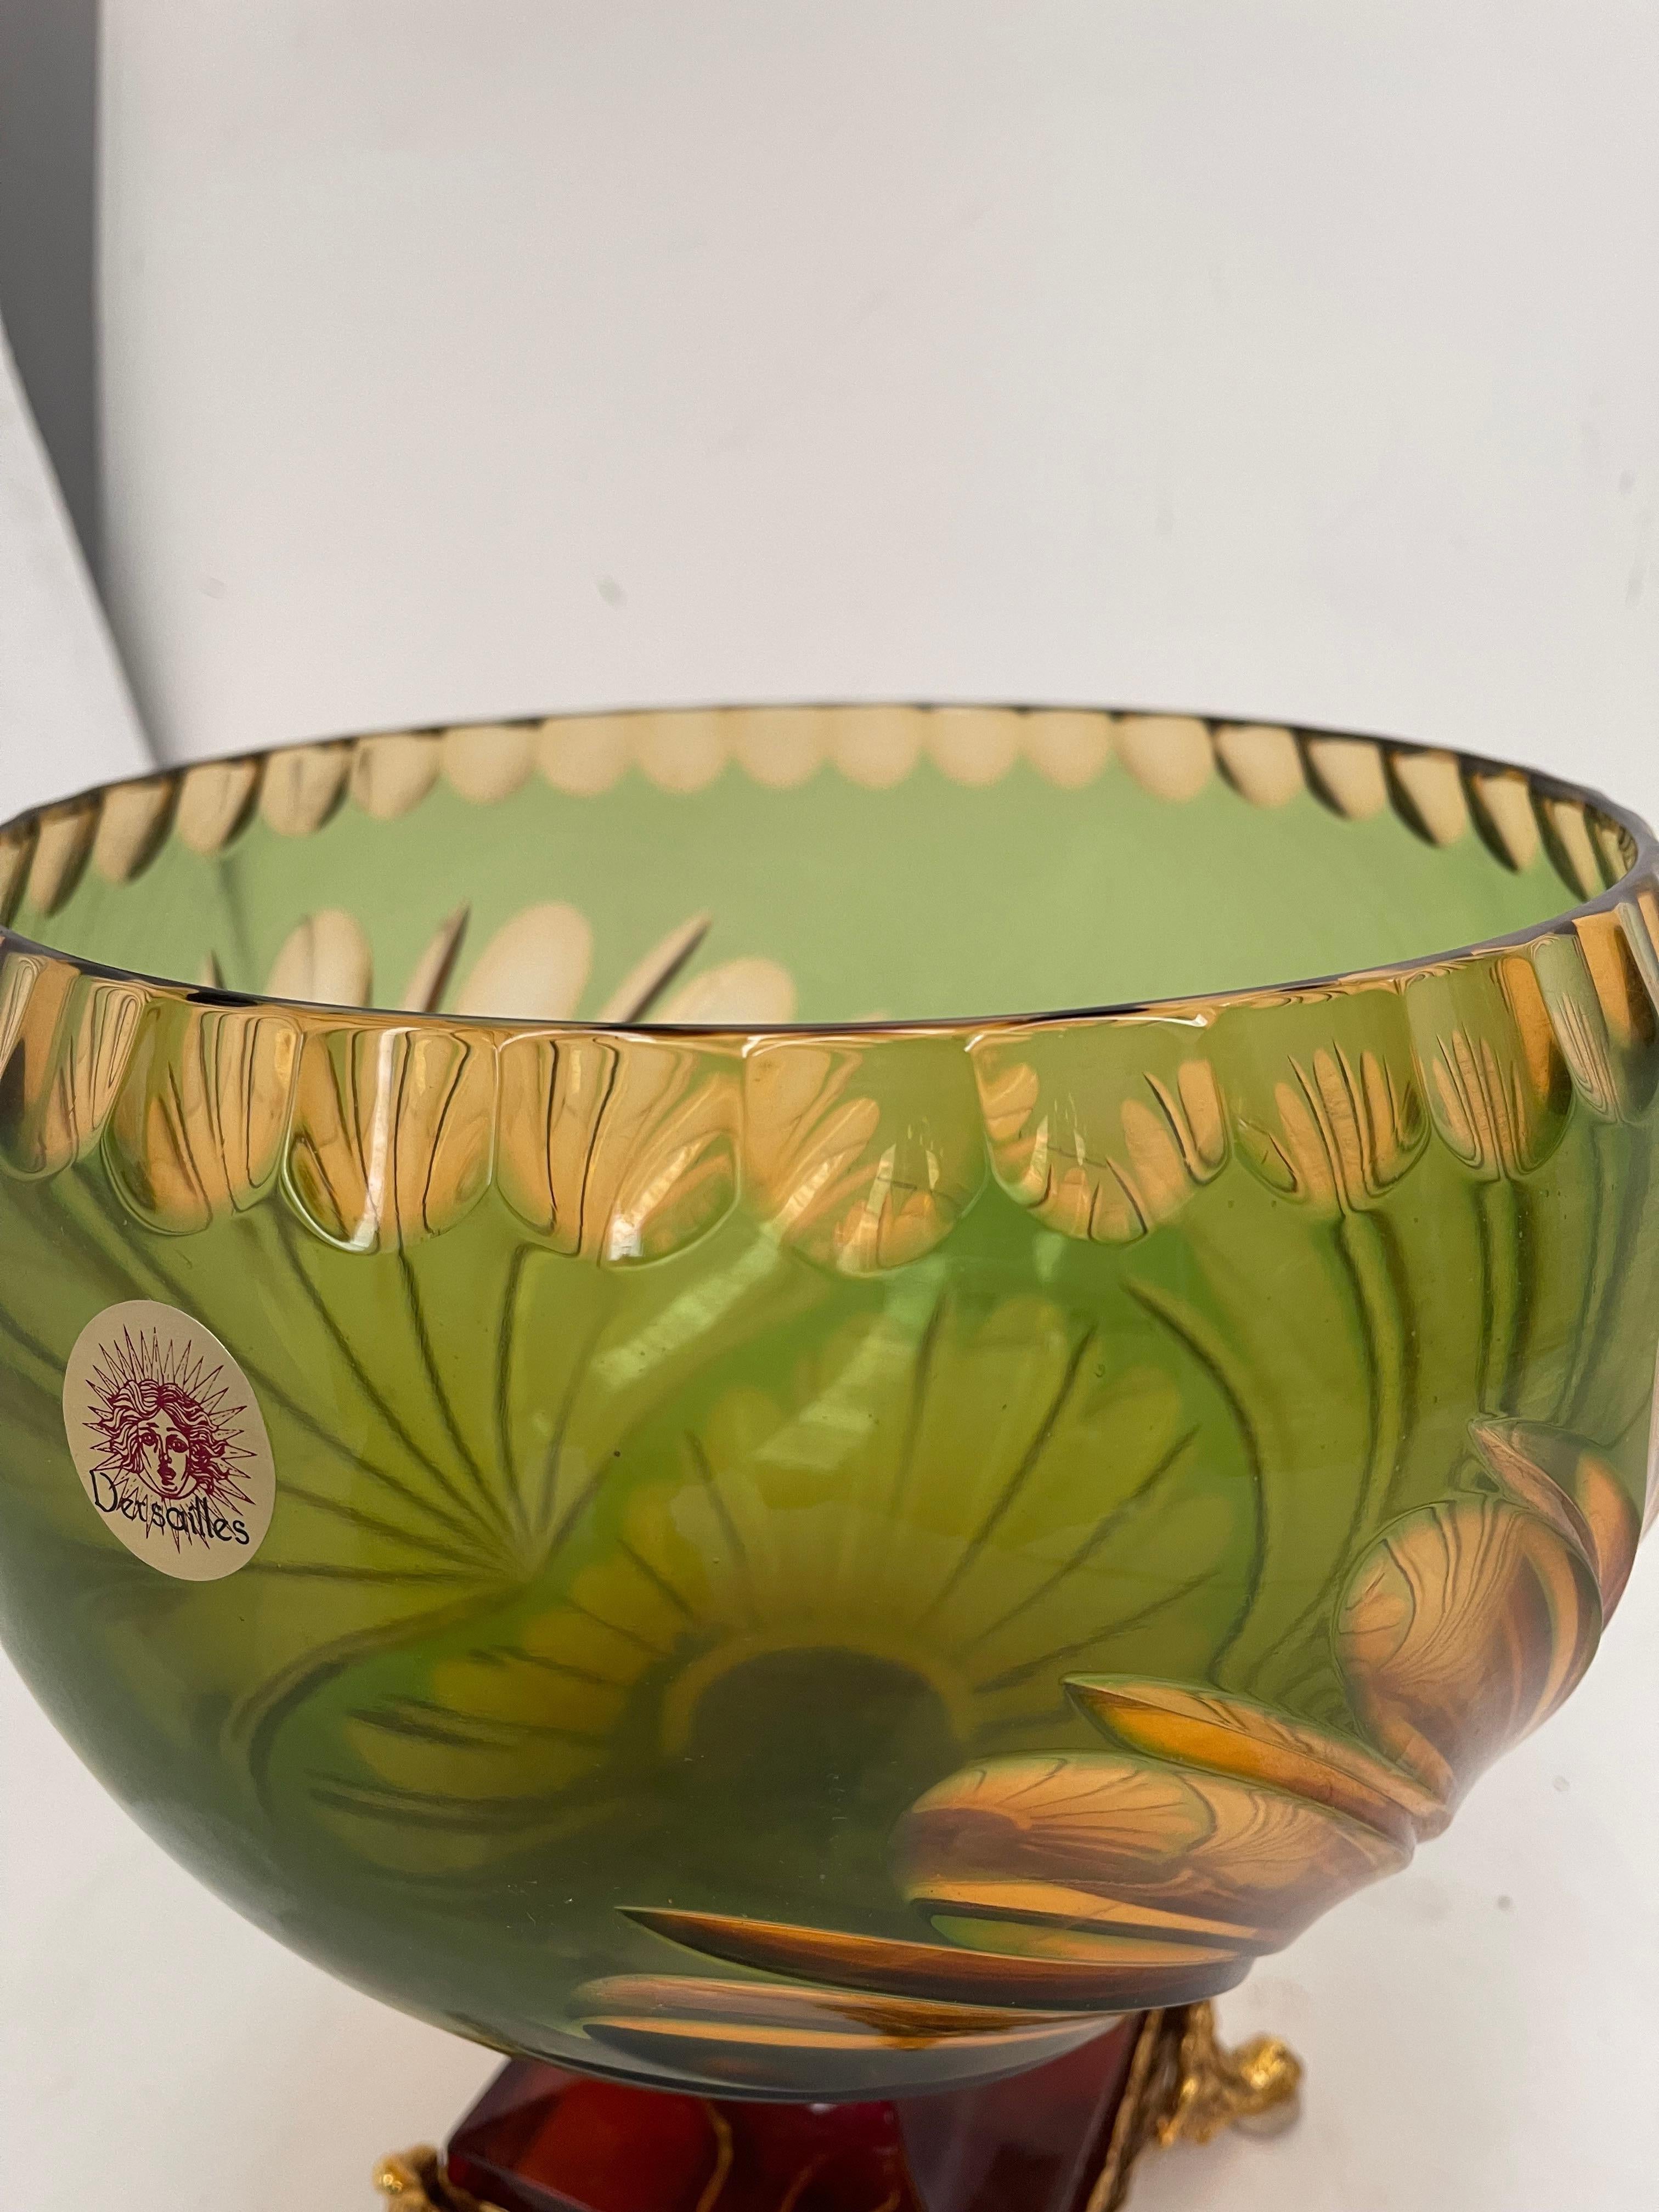 Art Glass Maestozo Cristallo con extraordianerie molature in preziosito con bronzi  For Sale